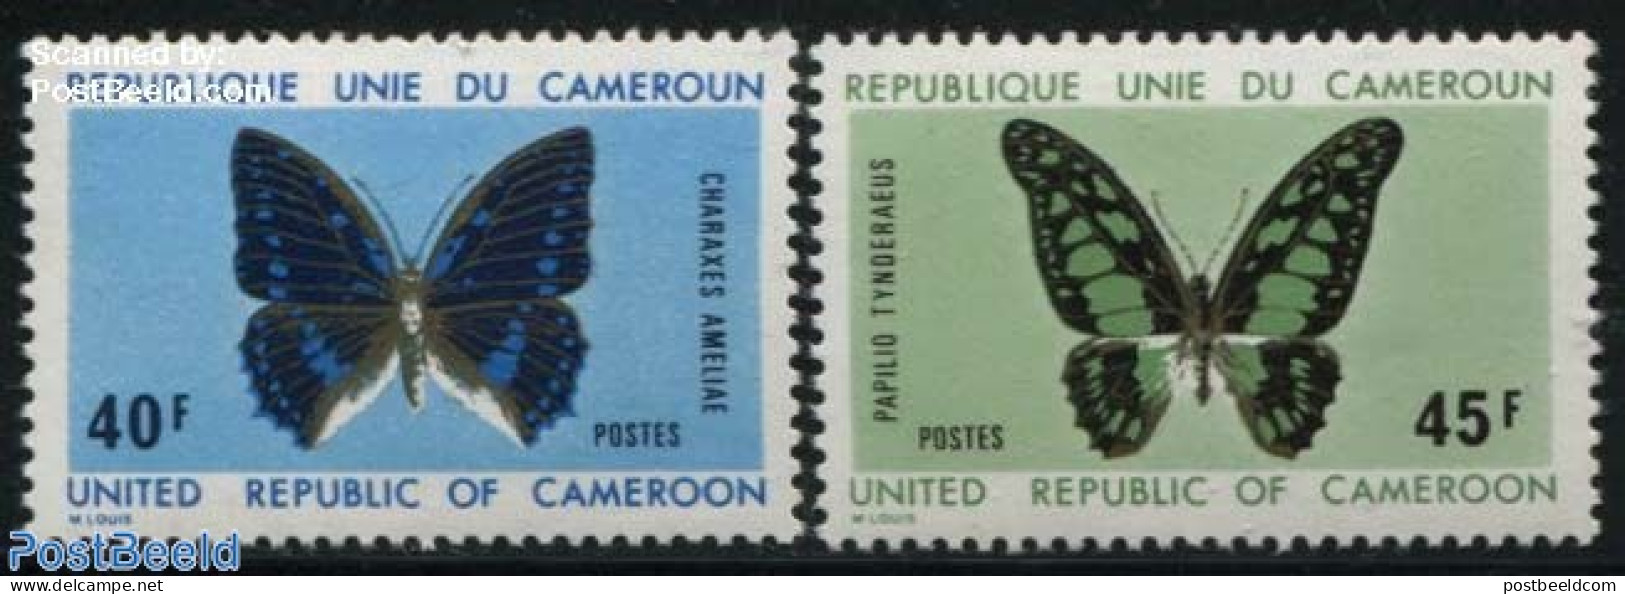 Cameroon 1972 Butterflies 2v, Mint NH, Nature - Butterflies - Cameroon (1960-...)